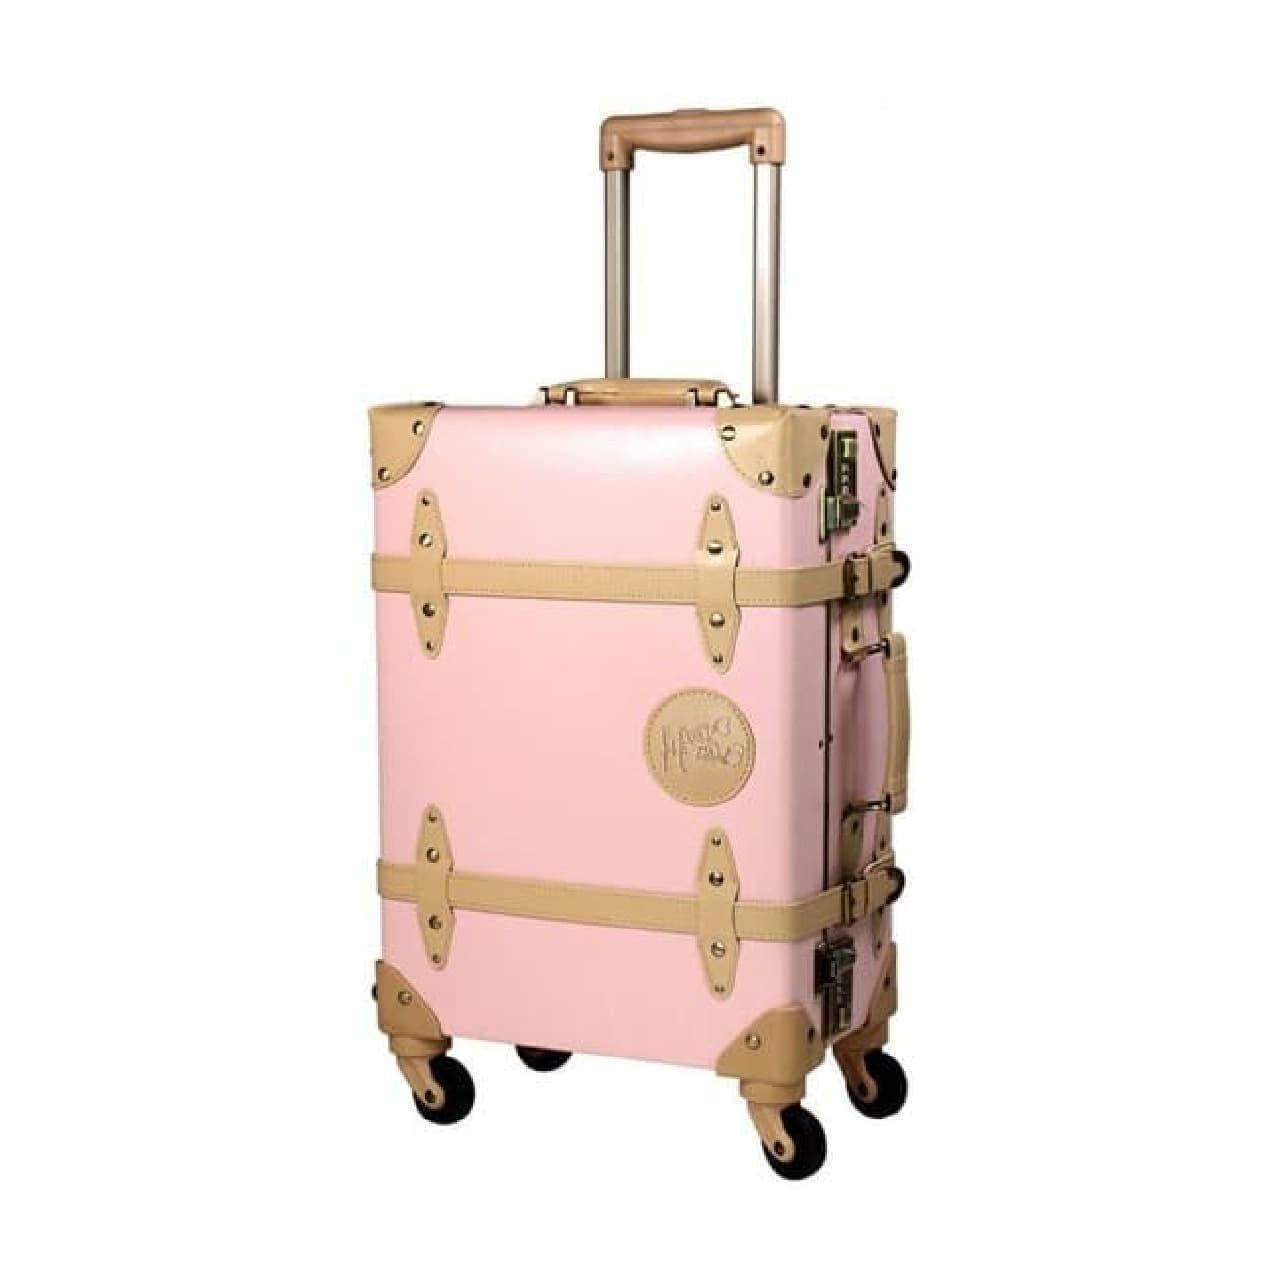 Korilakkuma Kiiroitori pattern suitcase in Villevan --Lightweight carry-on size